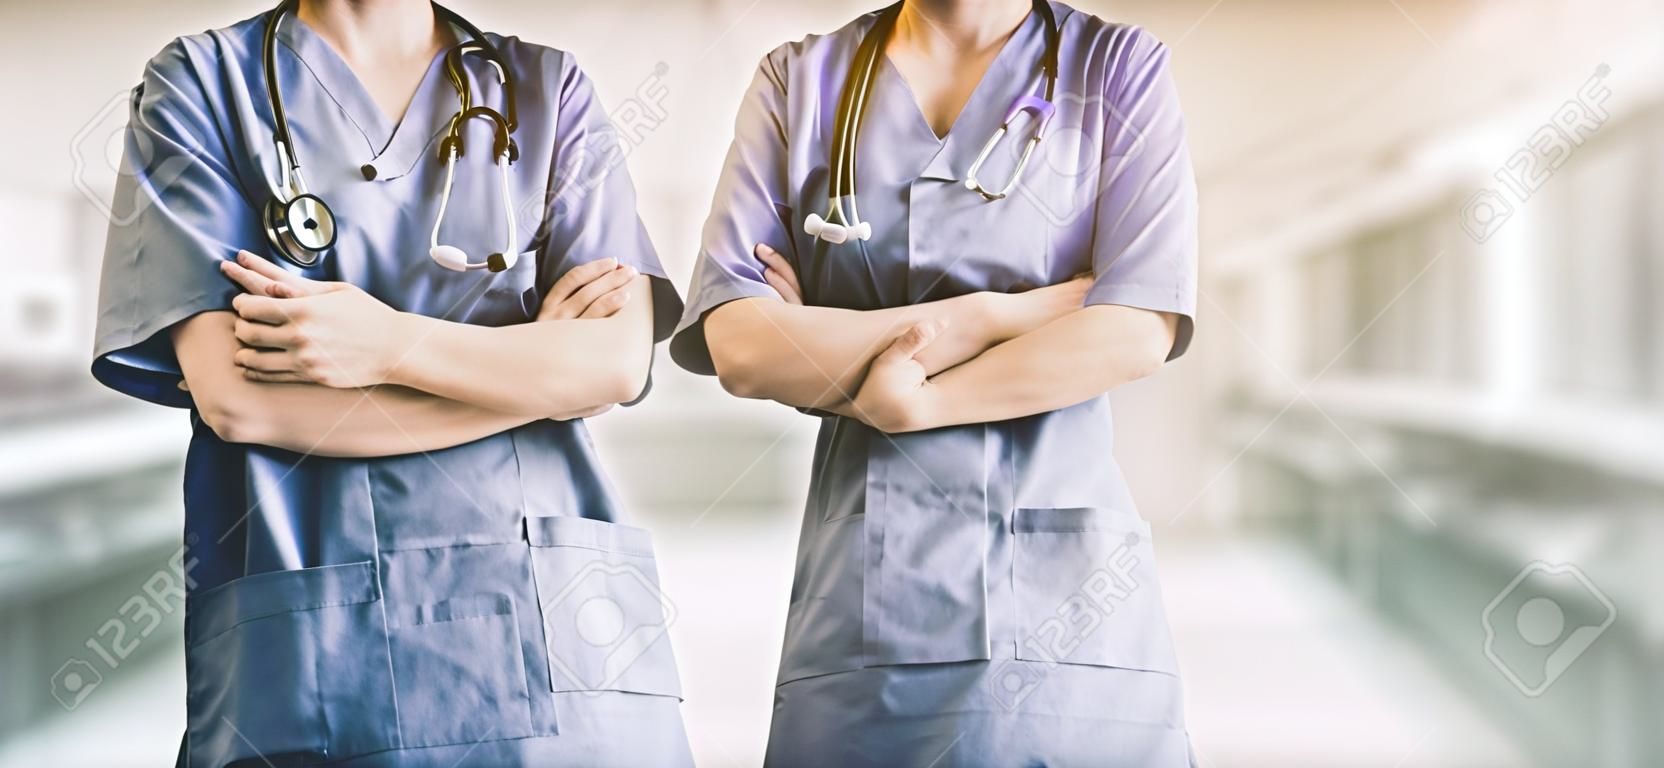 Deux membres du personnel hospitalier - chirurgien, médecin ou infirmière debout avec les bras croisés à l'hôpital. Soins médicaux et service médical.